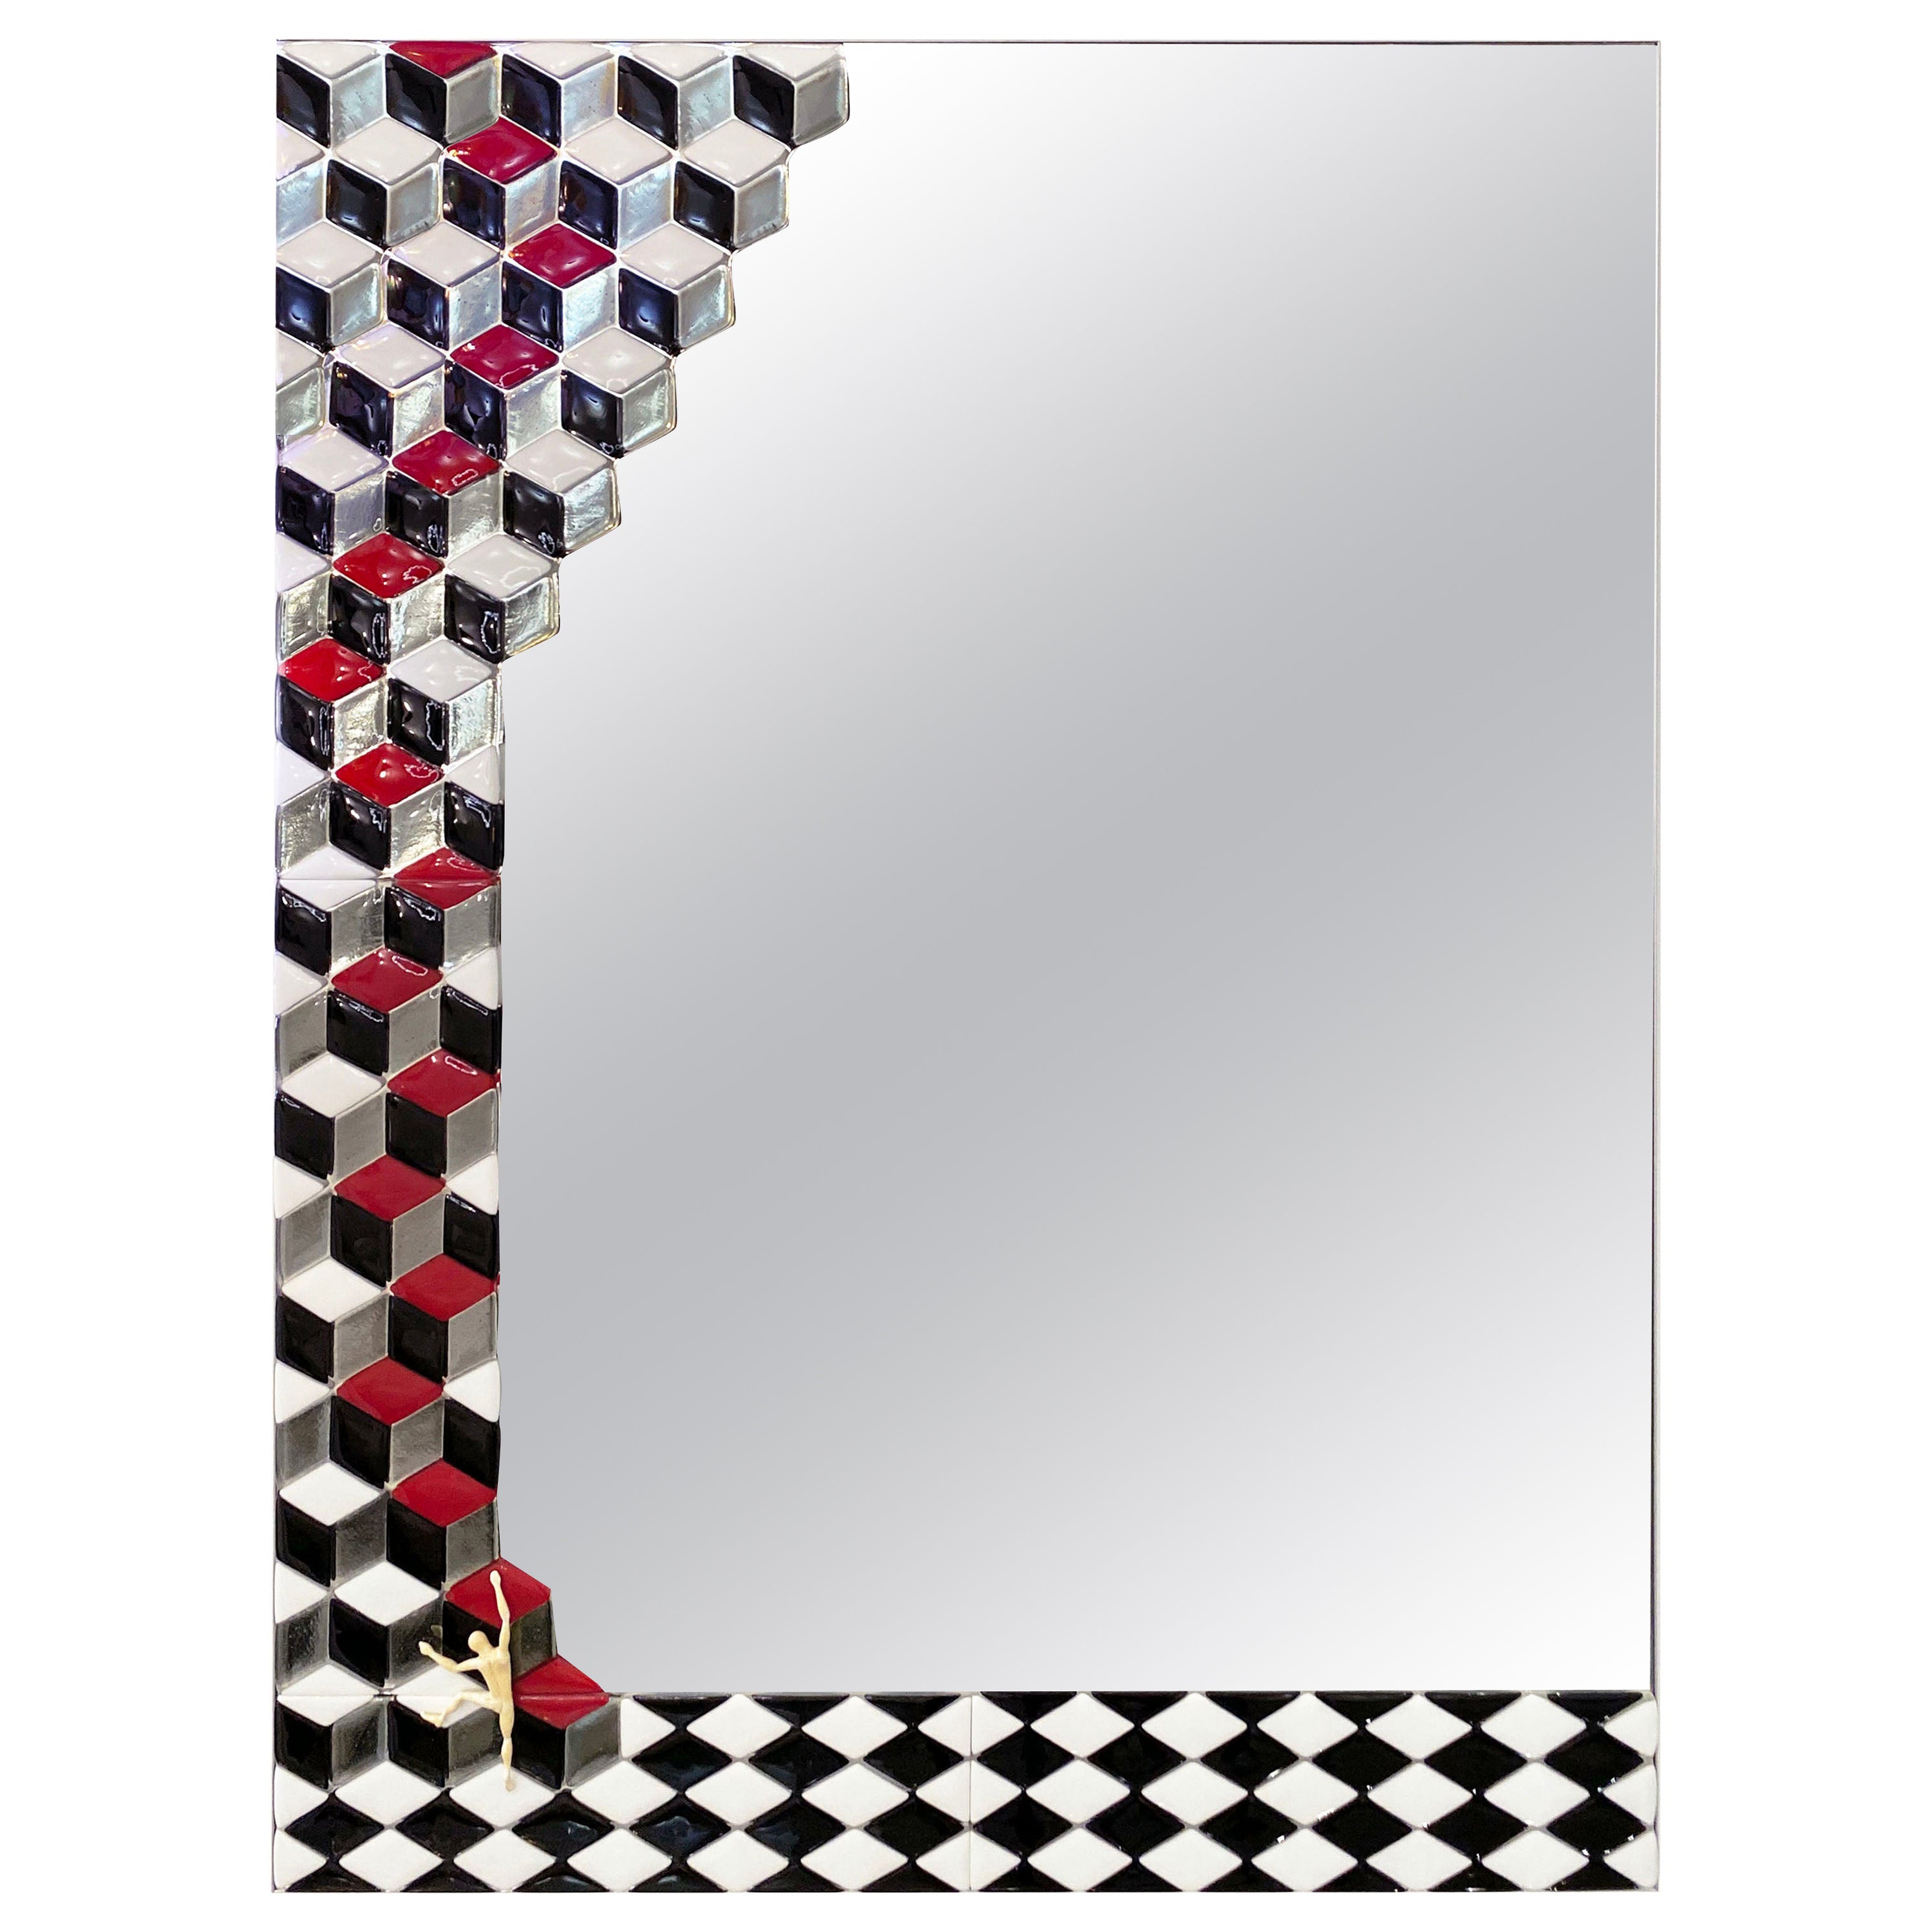 Miroir sur mesure inspiré de Whiting, italien rouge noir blanc fumé, en verre de Murano satiné